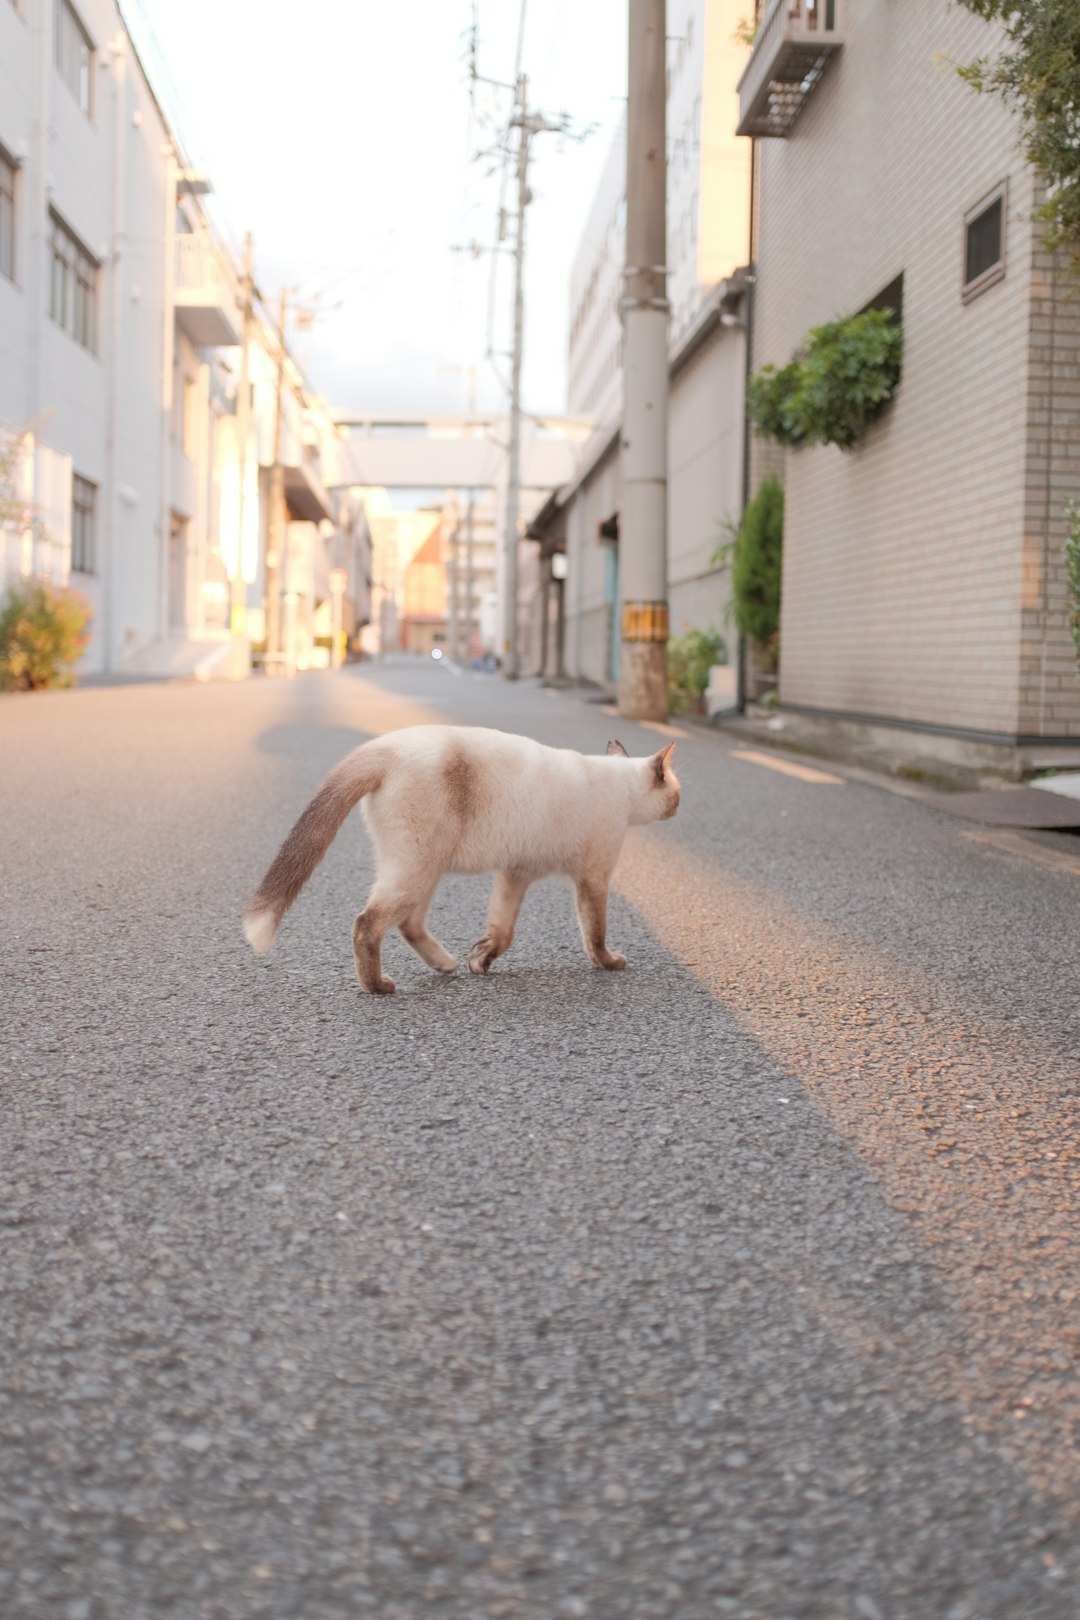 white cat walking on street during daytime